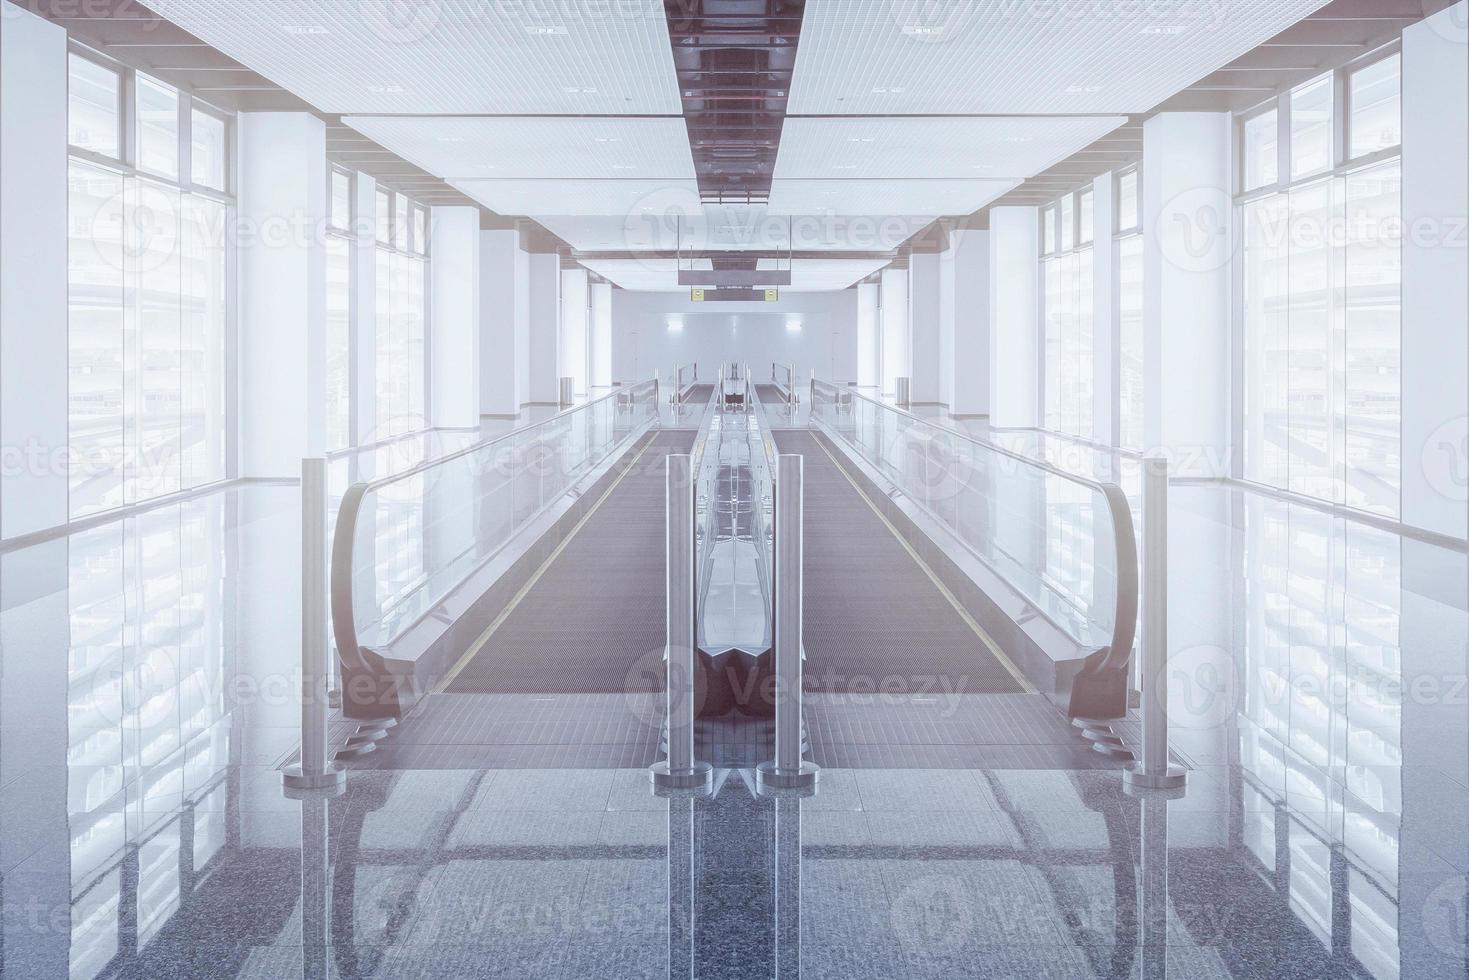 La pasarela moderna de la escalera mecánica avanza y la escalera mecánica se mueve hacia atrás en el aeropuerto internacional. La escalera mecánica es una instalación para el transporte de apoyo en un edificio moderno. foto